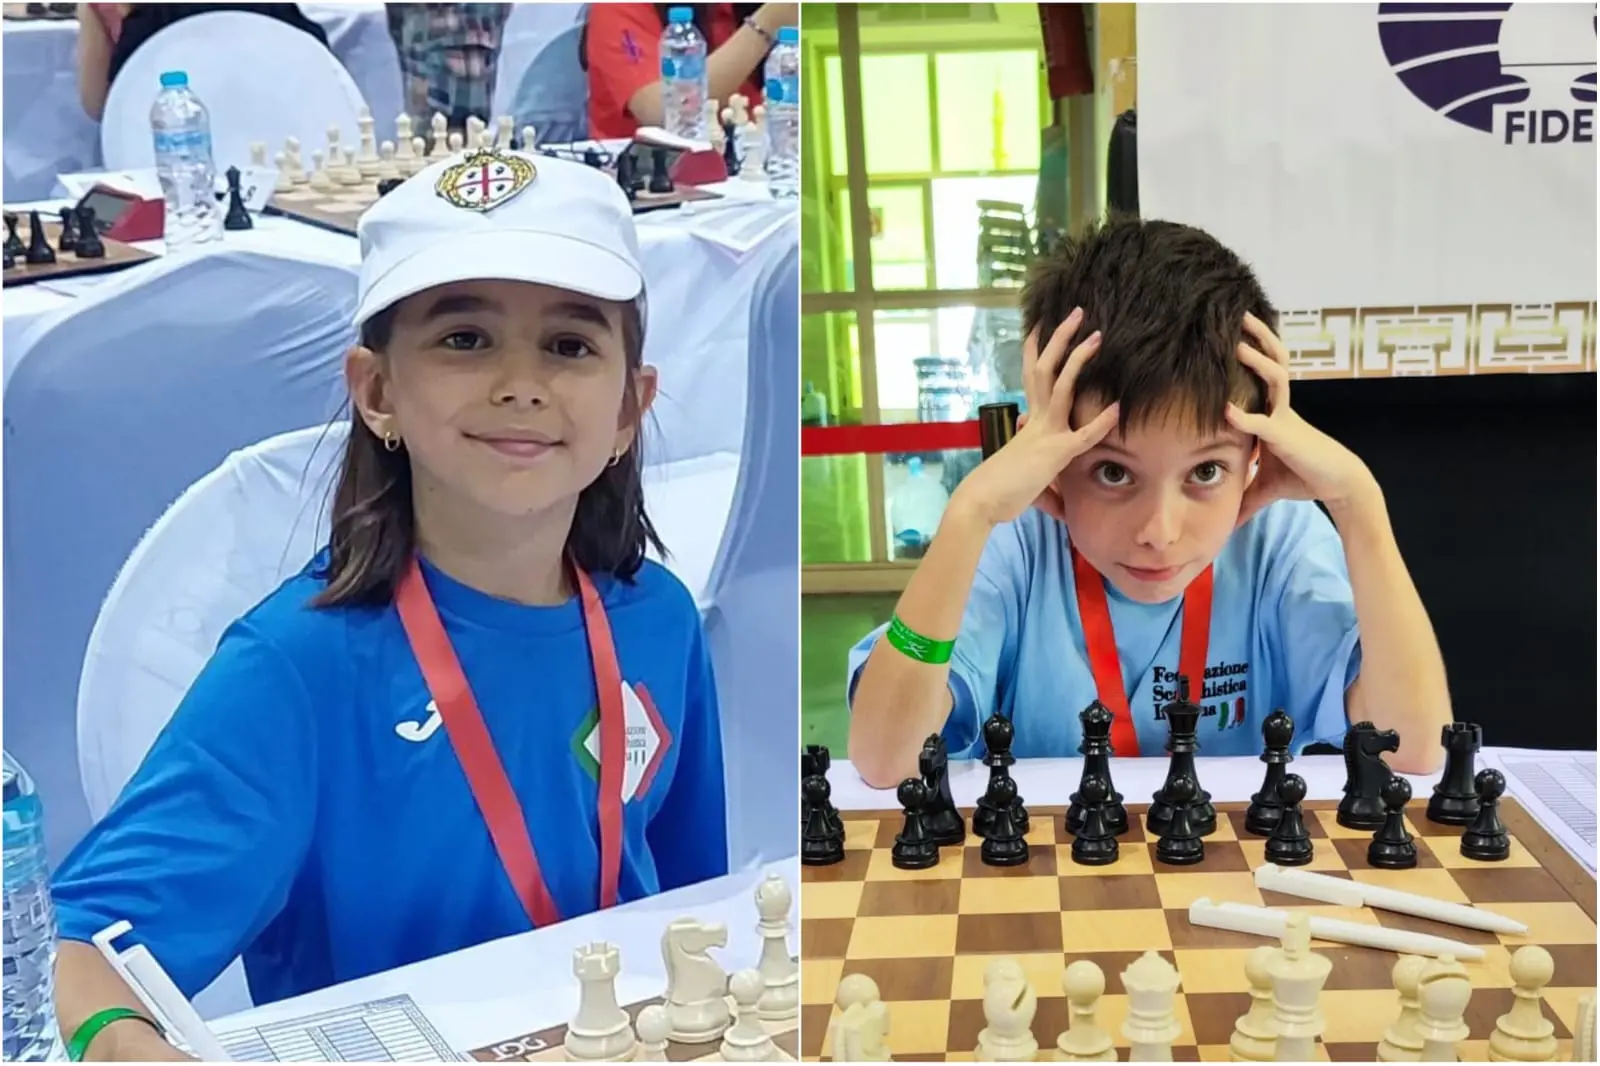 Anna Garbarino e Giovanni Spiga, impegnati nei mondiali di scacchi (L'Unione Sarda)